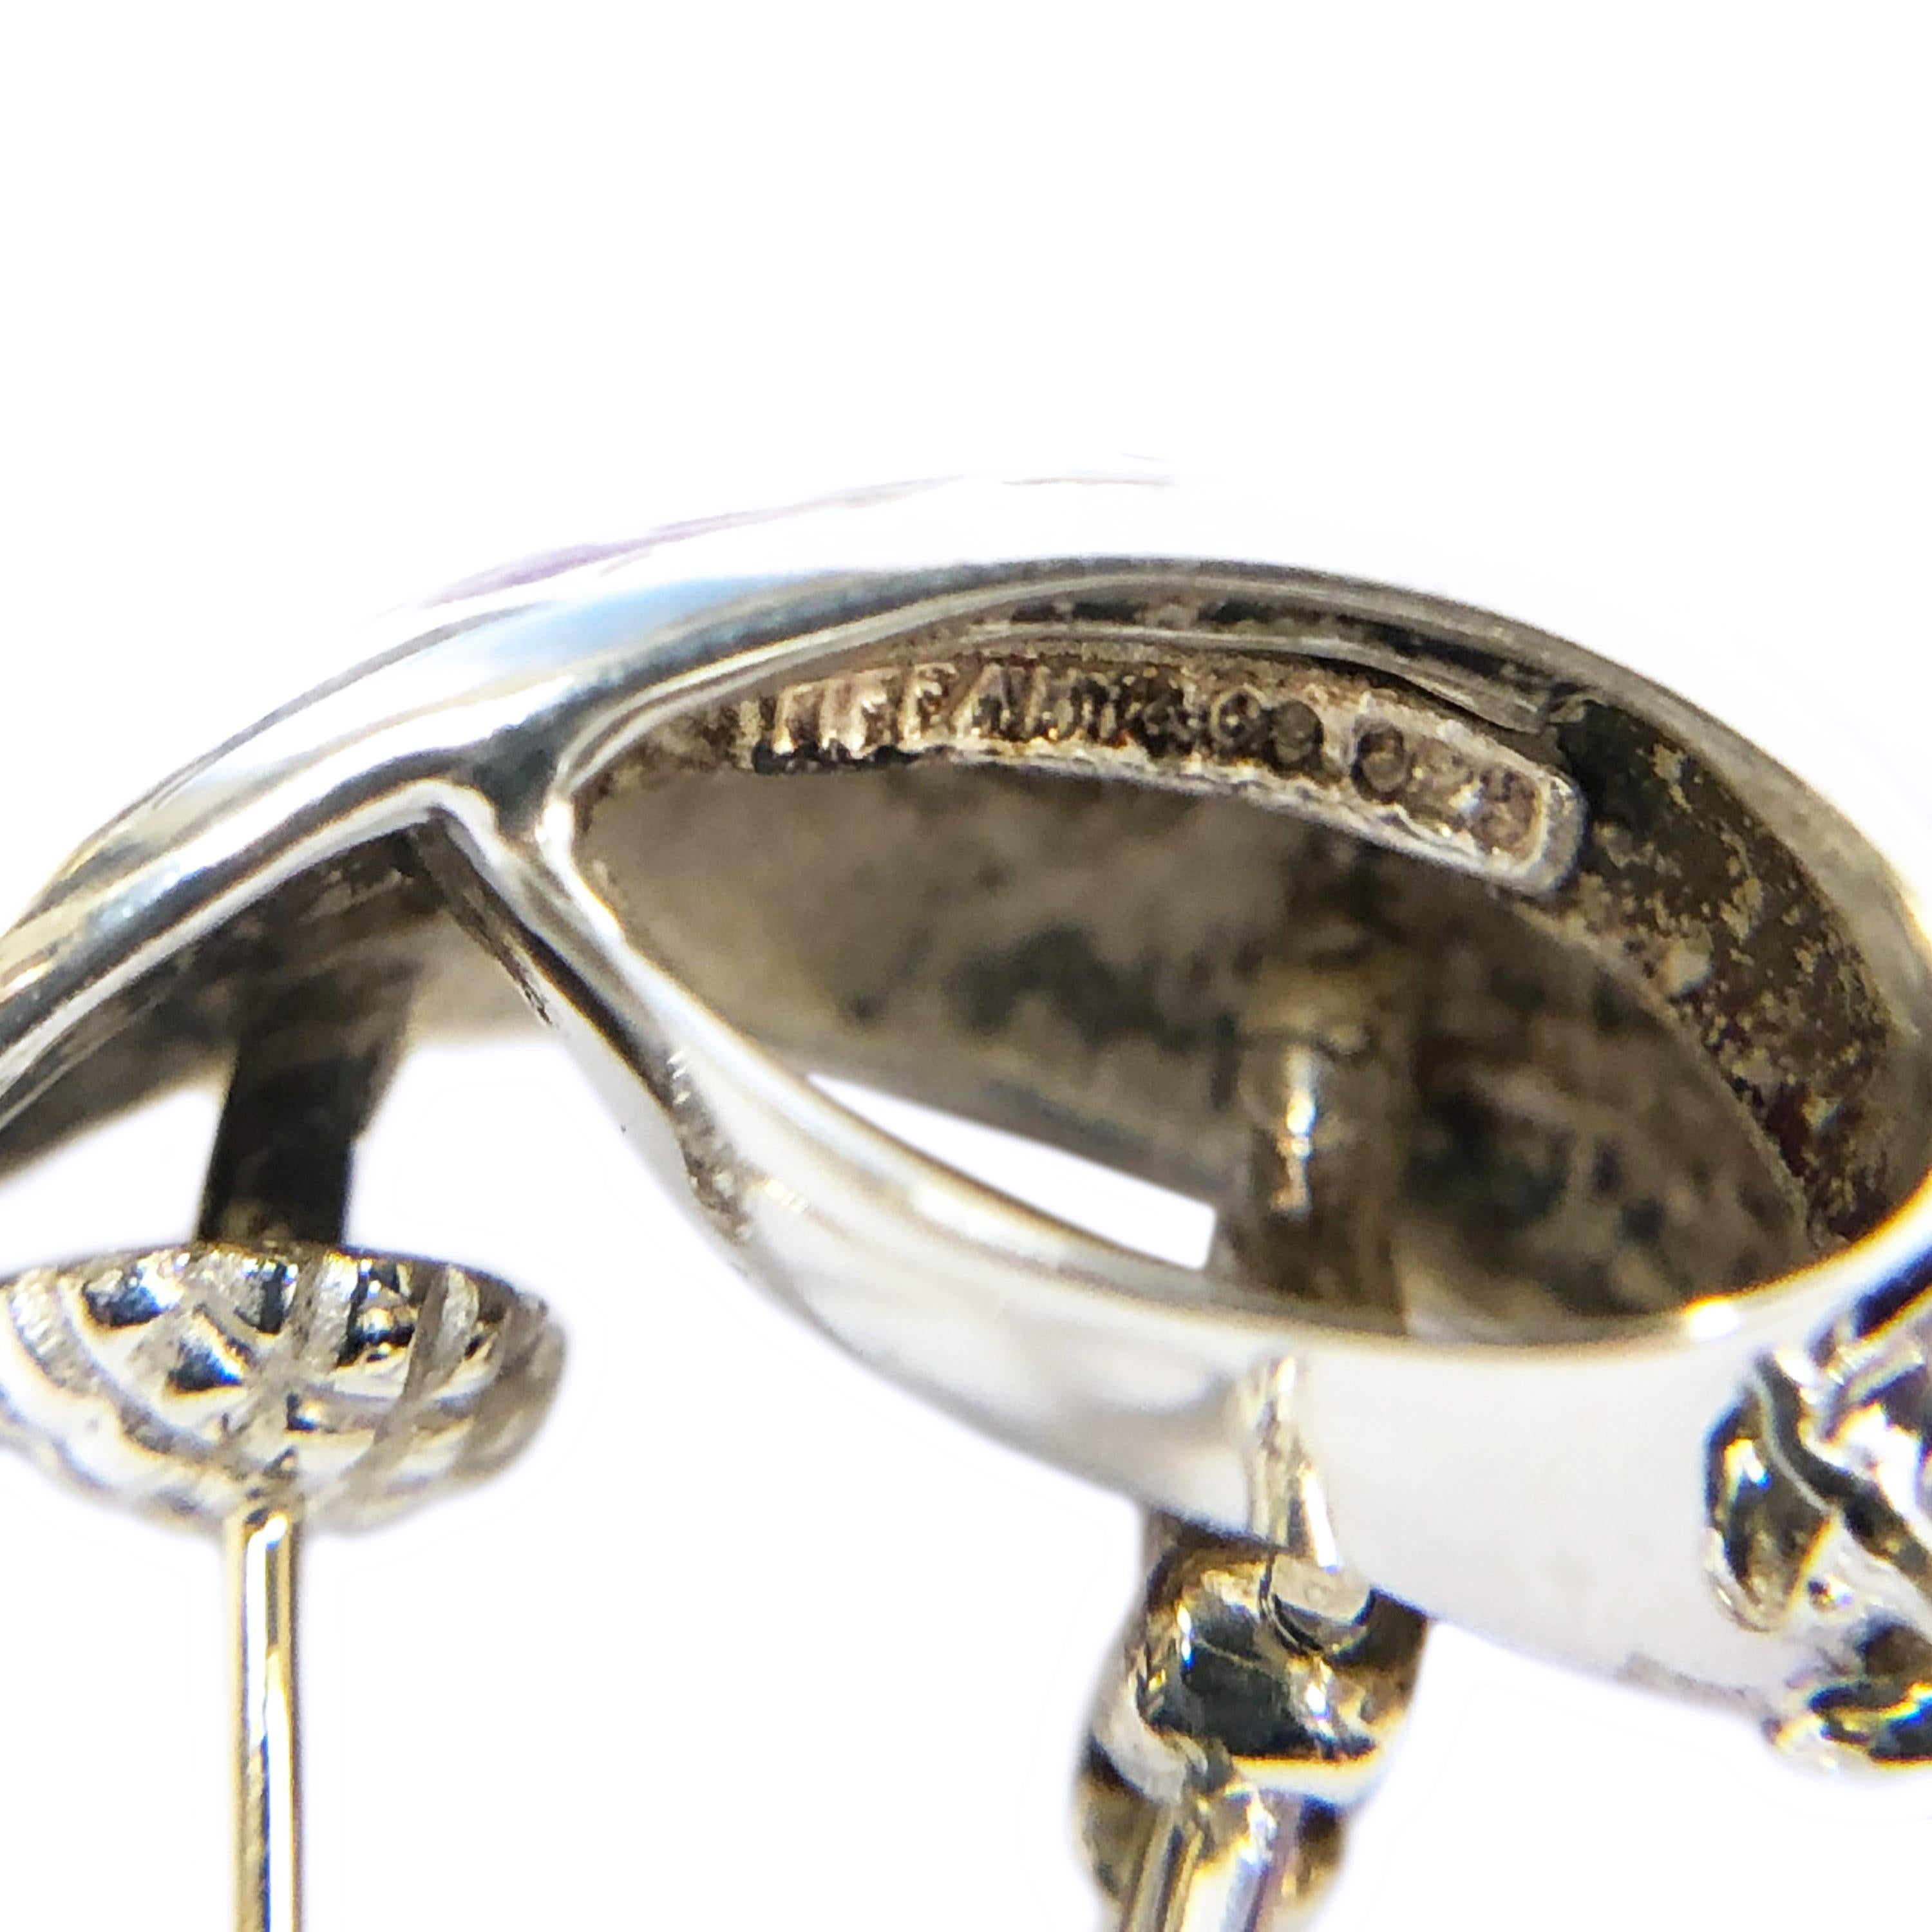 amethyst earrings tiffany